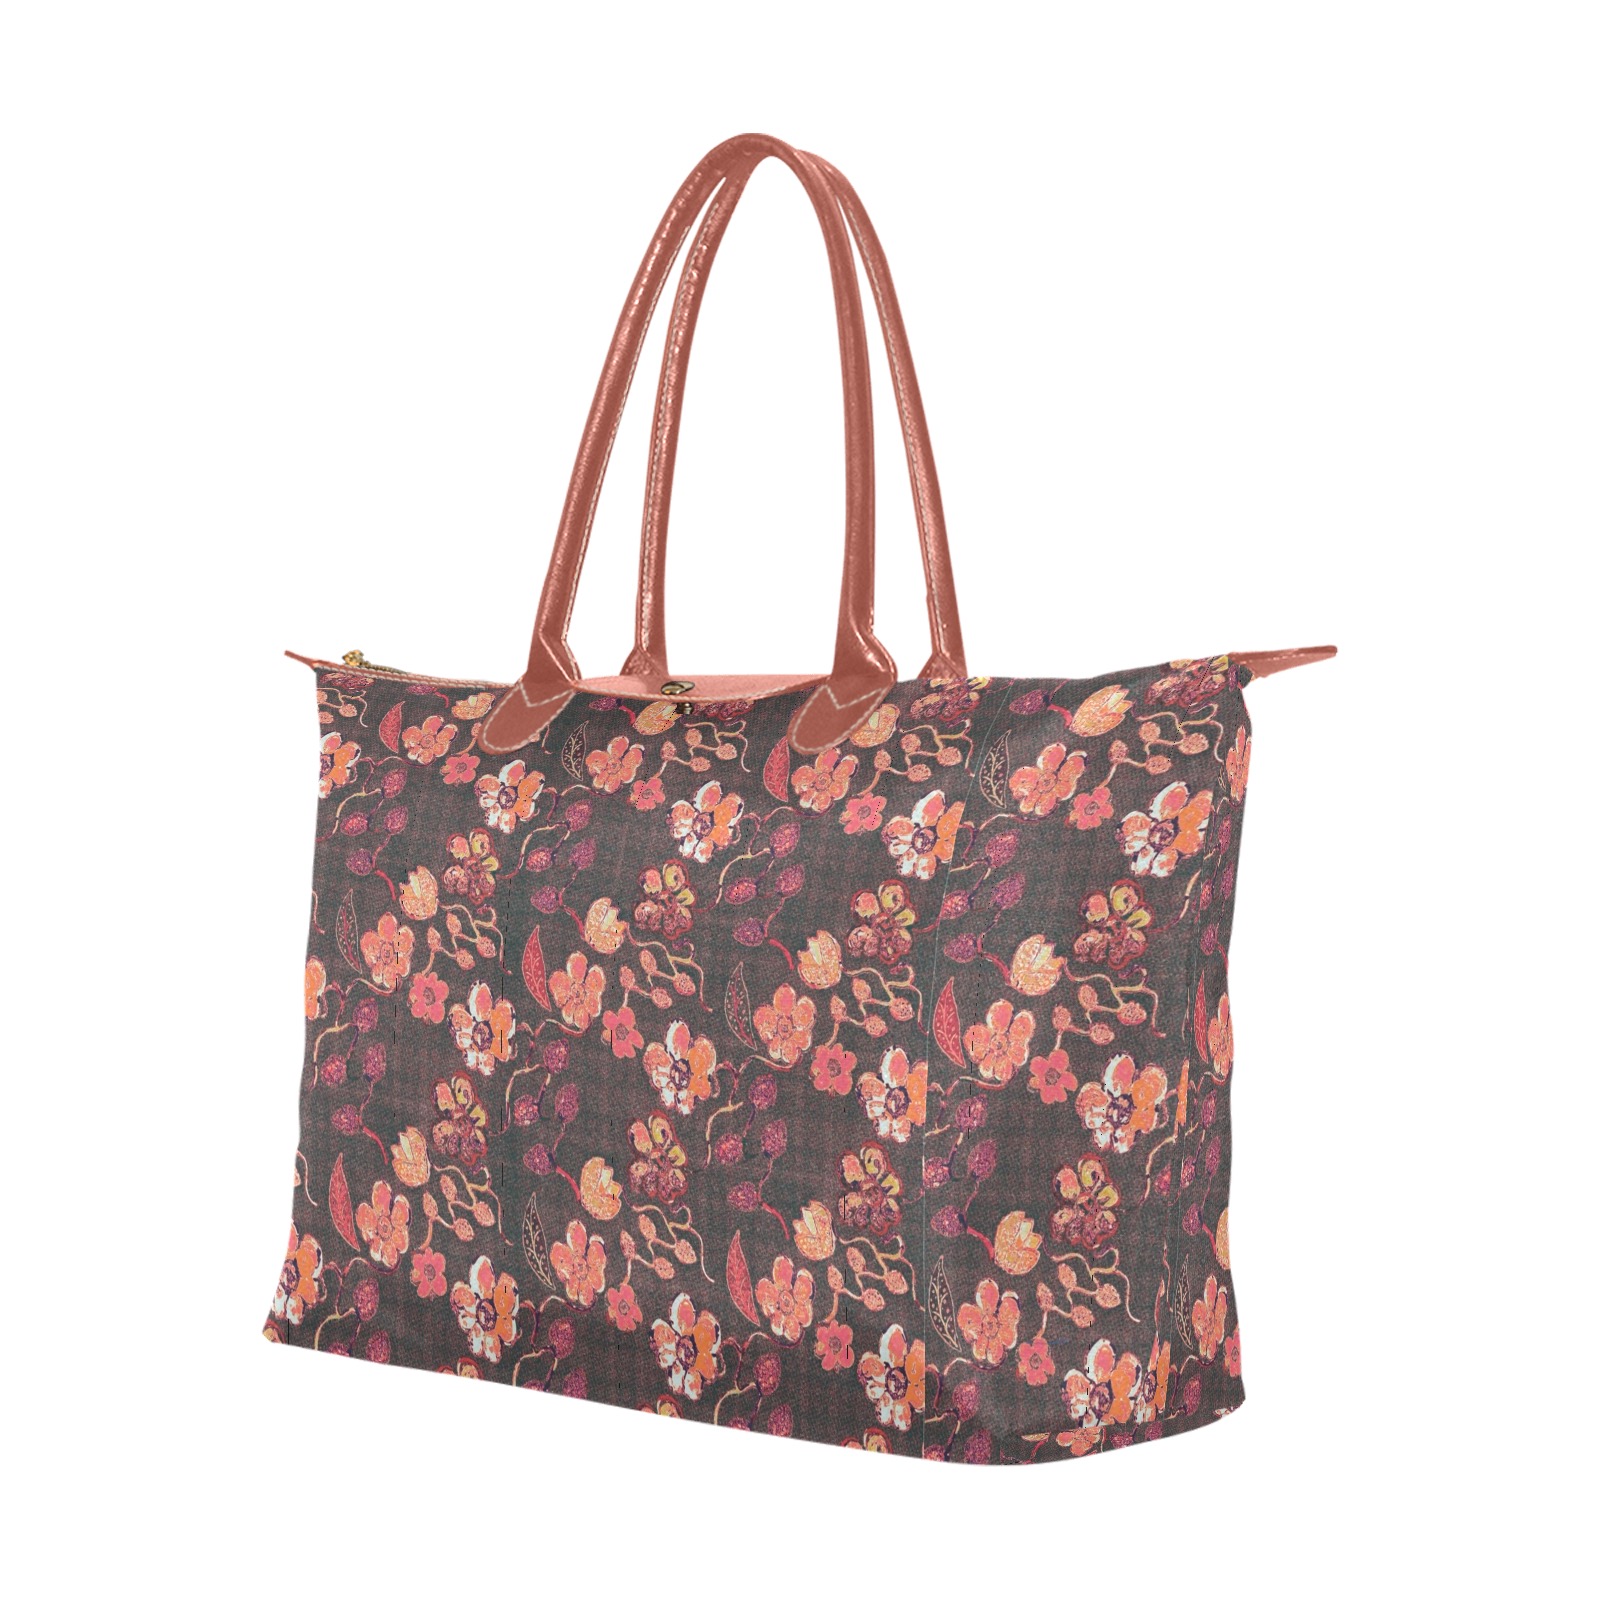 Brown-Orange Floral Vintage Single-Shoulder Lady Handbag (Model 1714)